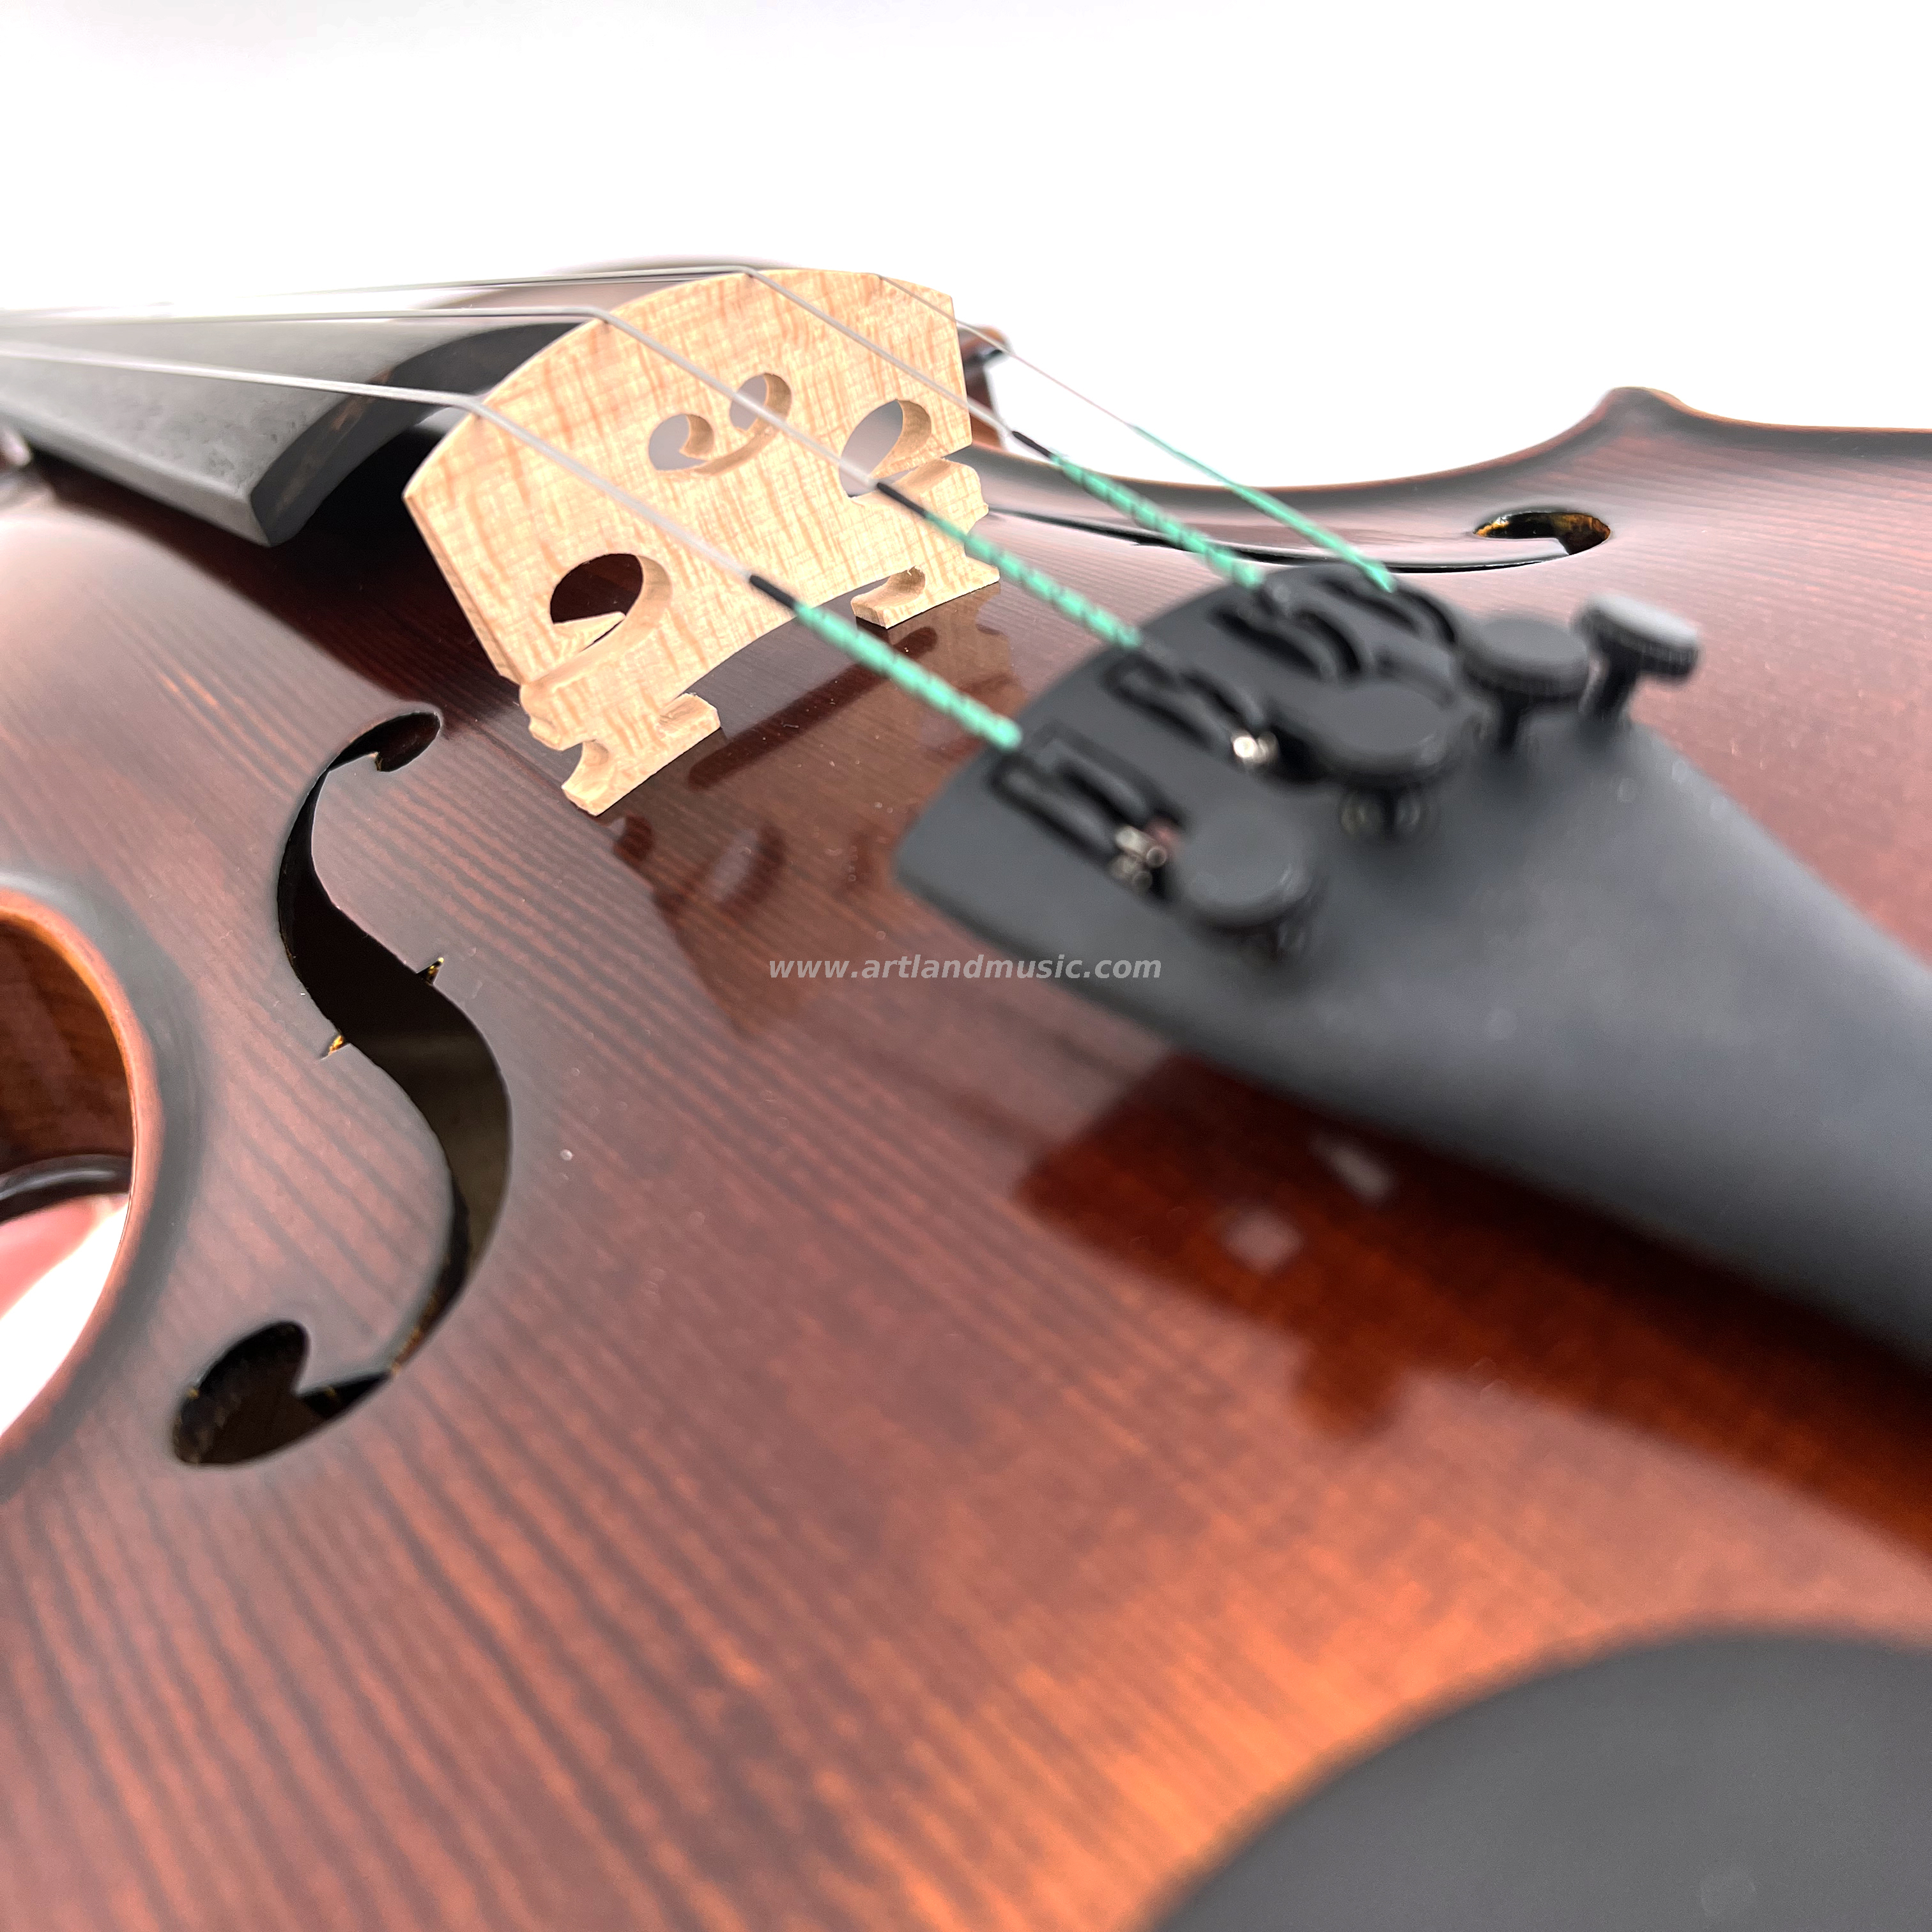 Bonito violín moderado de llama con barniz manual y artesanía advocada (VO150)